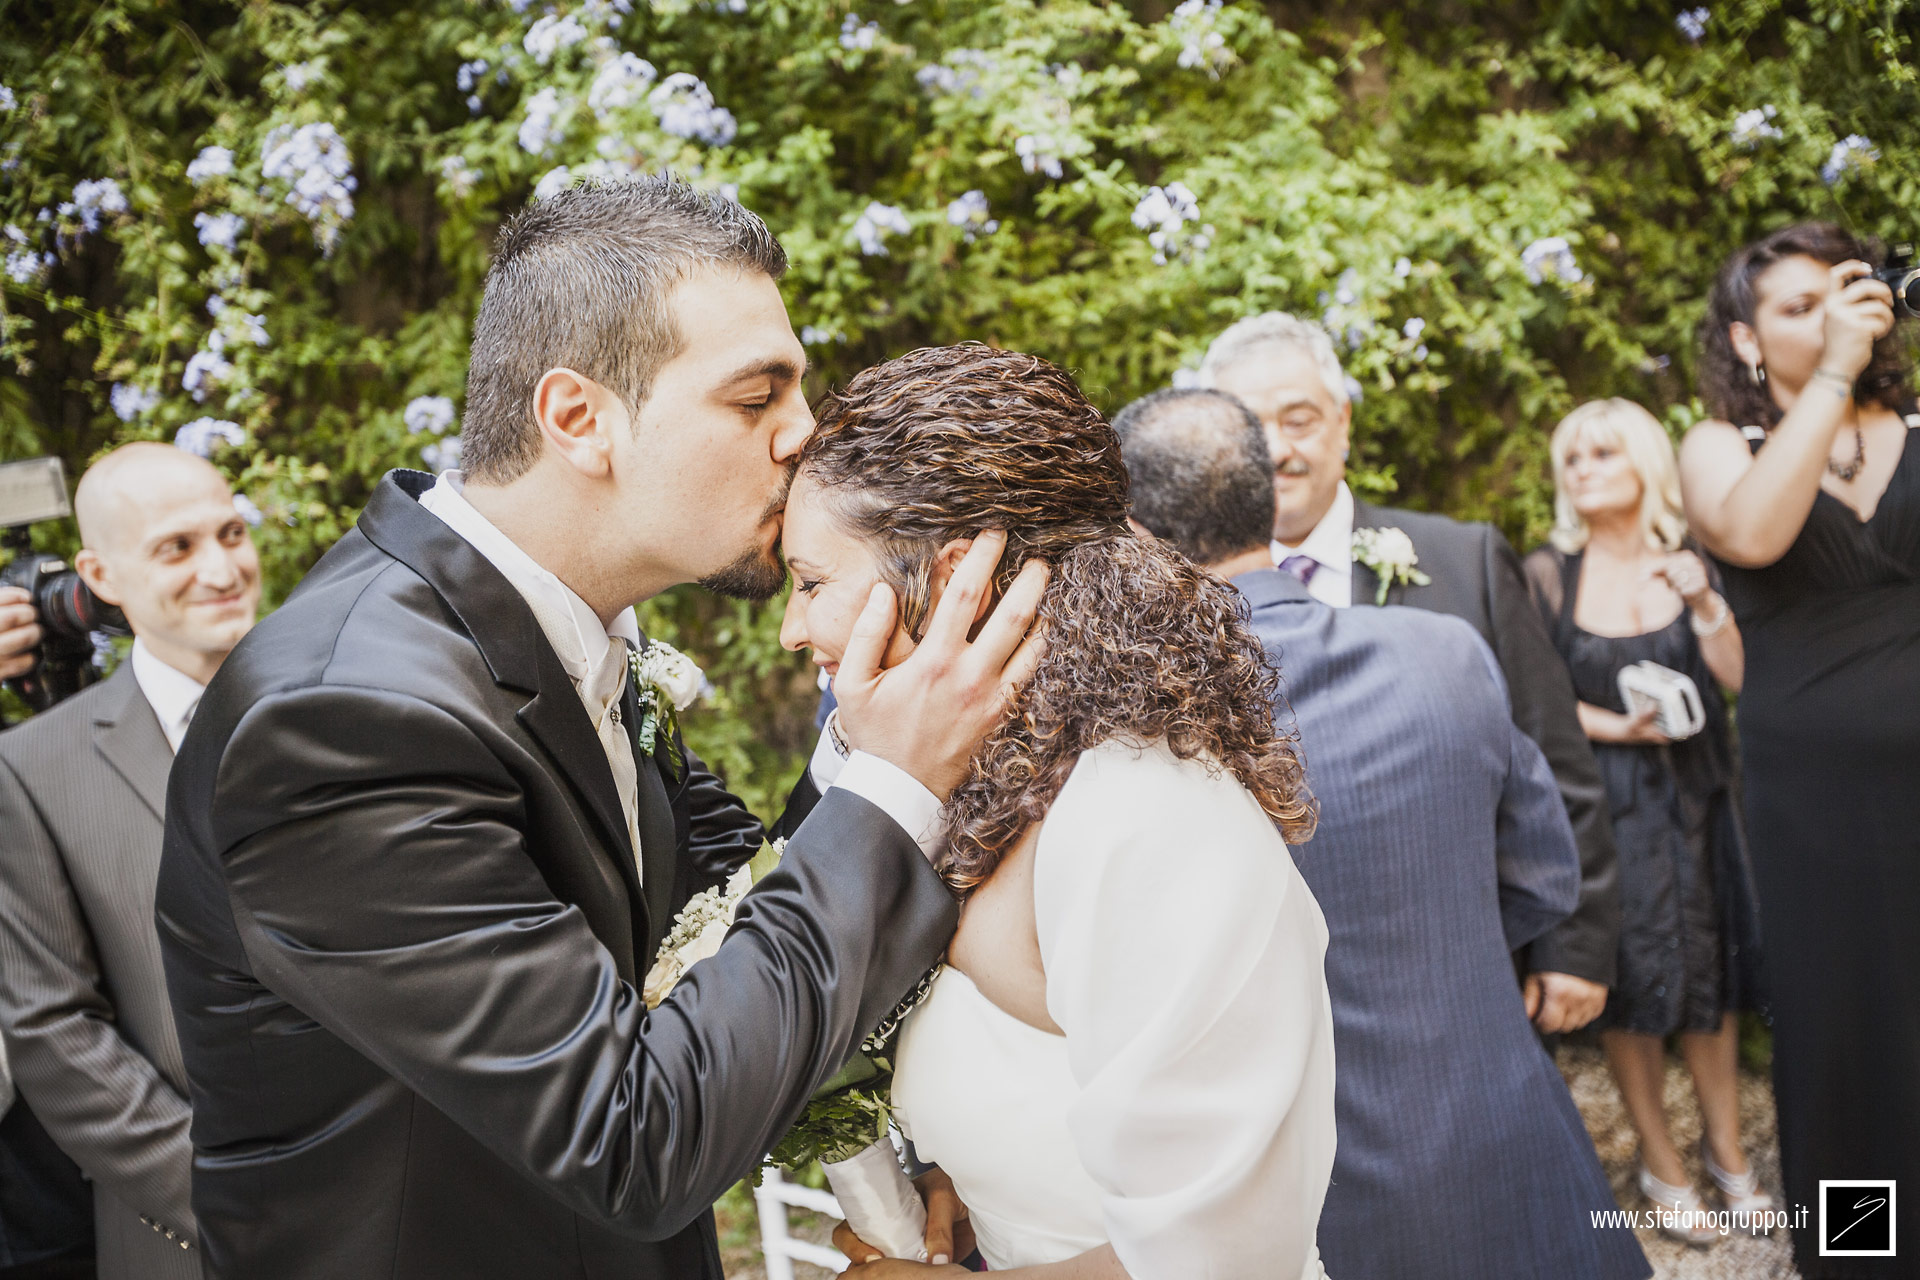 matrimonio | La Cerimonia Civile | fotografia di Stefano Gruppo